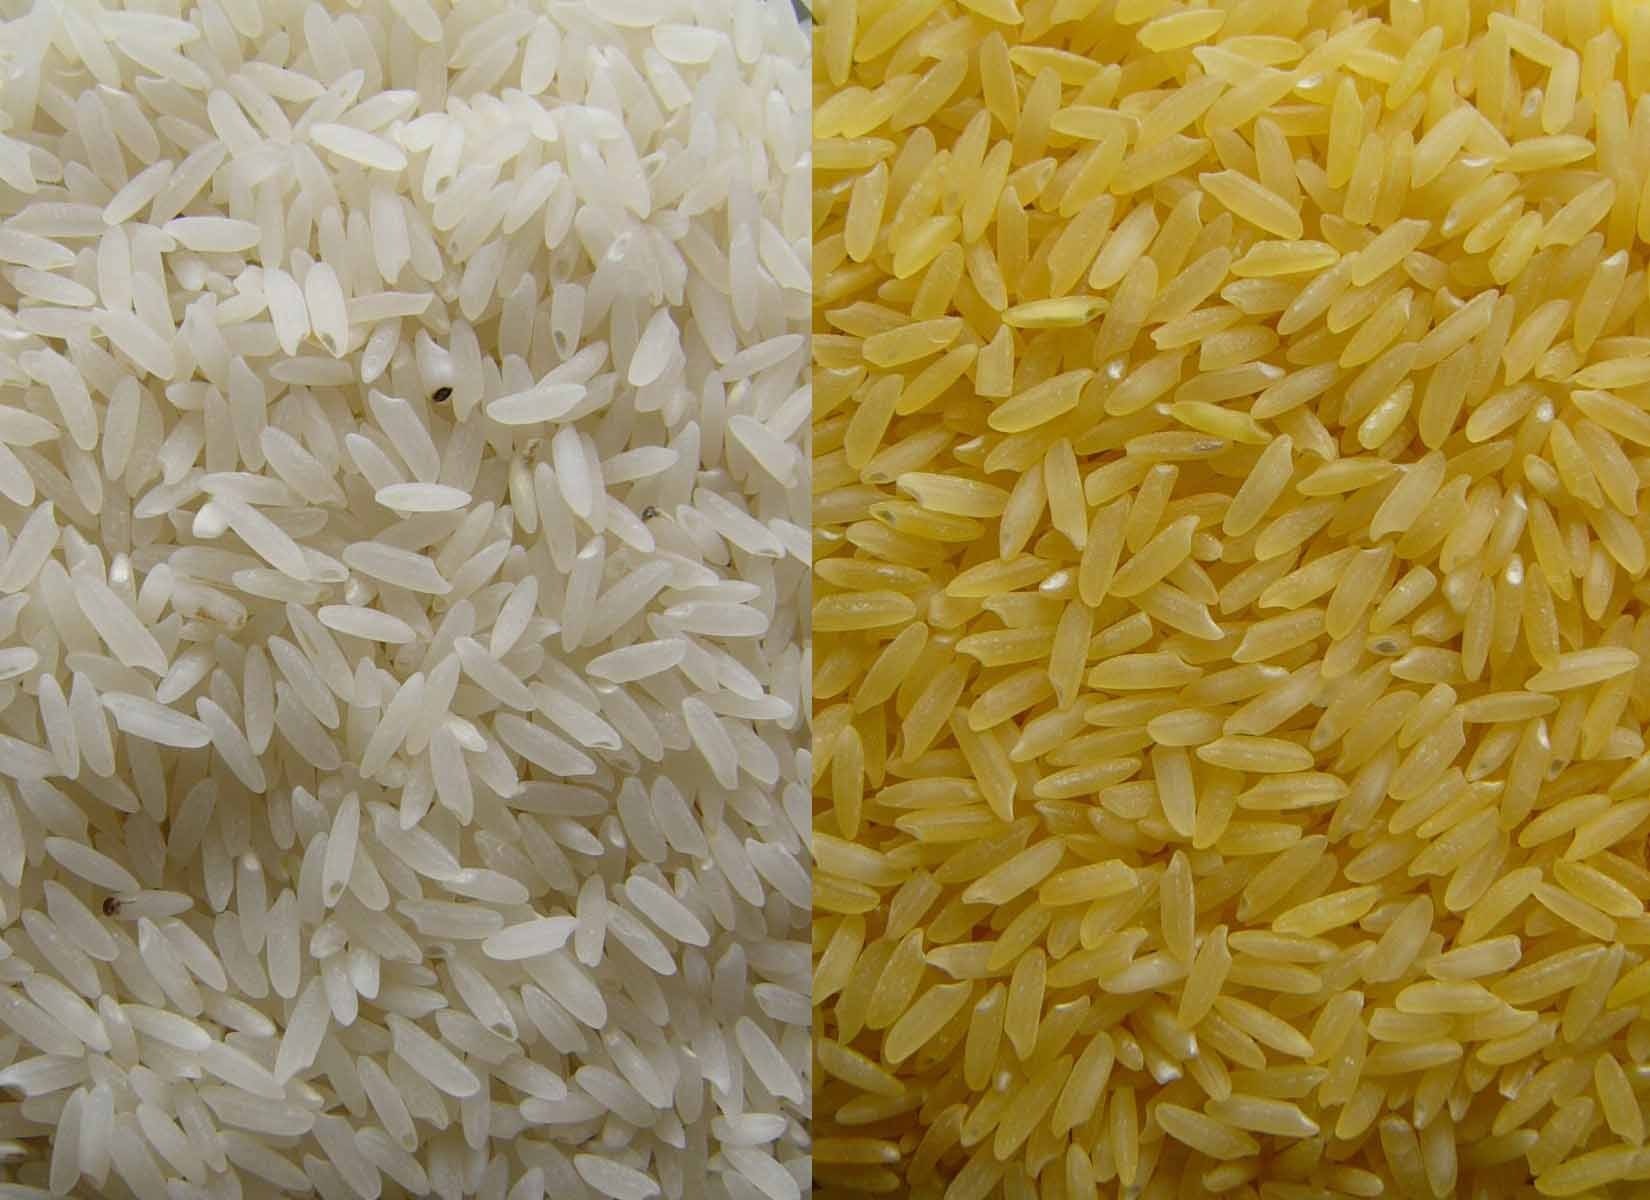 à direita, o arroz dourado geneticamente modificado; à esquerda, o arroz normal para comparação  (Foto: Golden Rice Project)